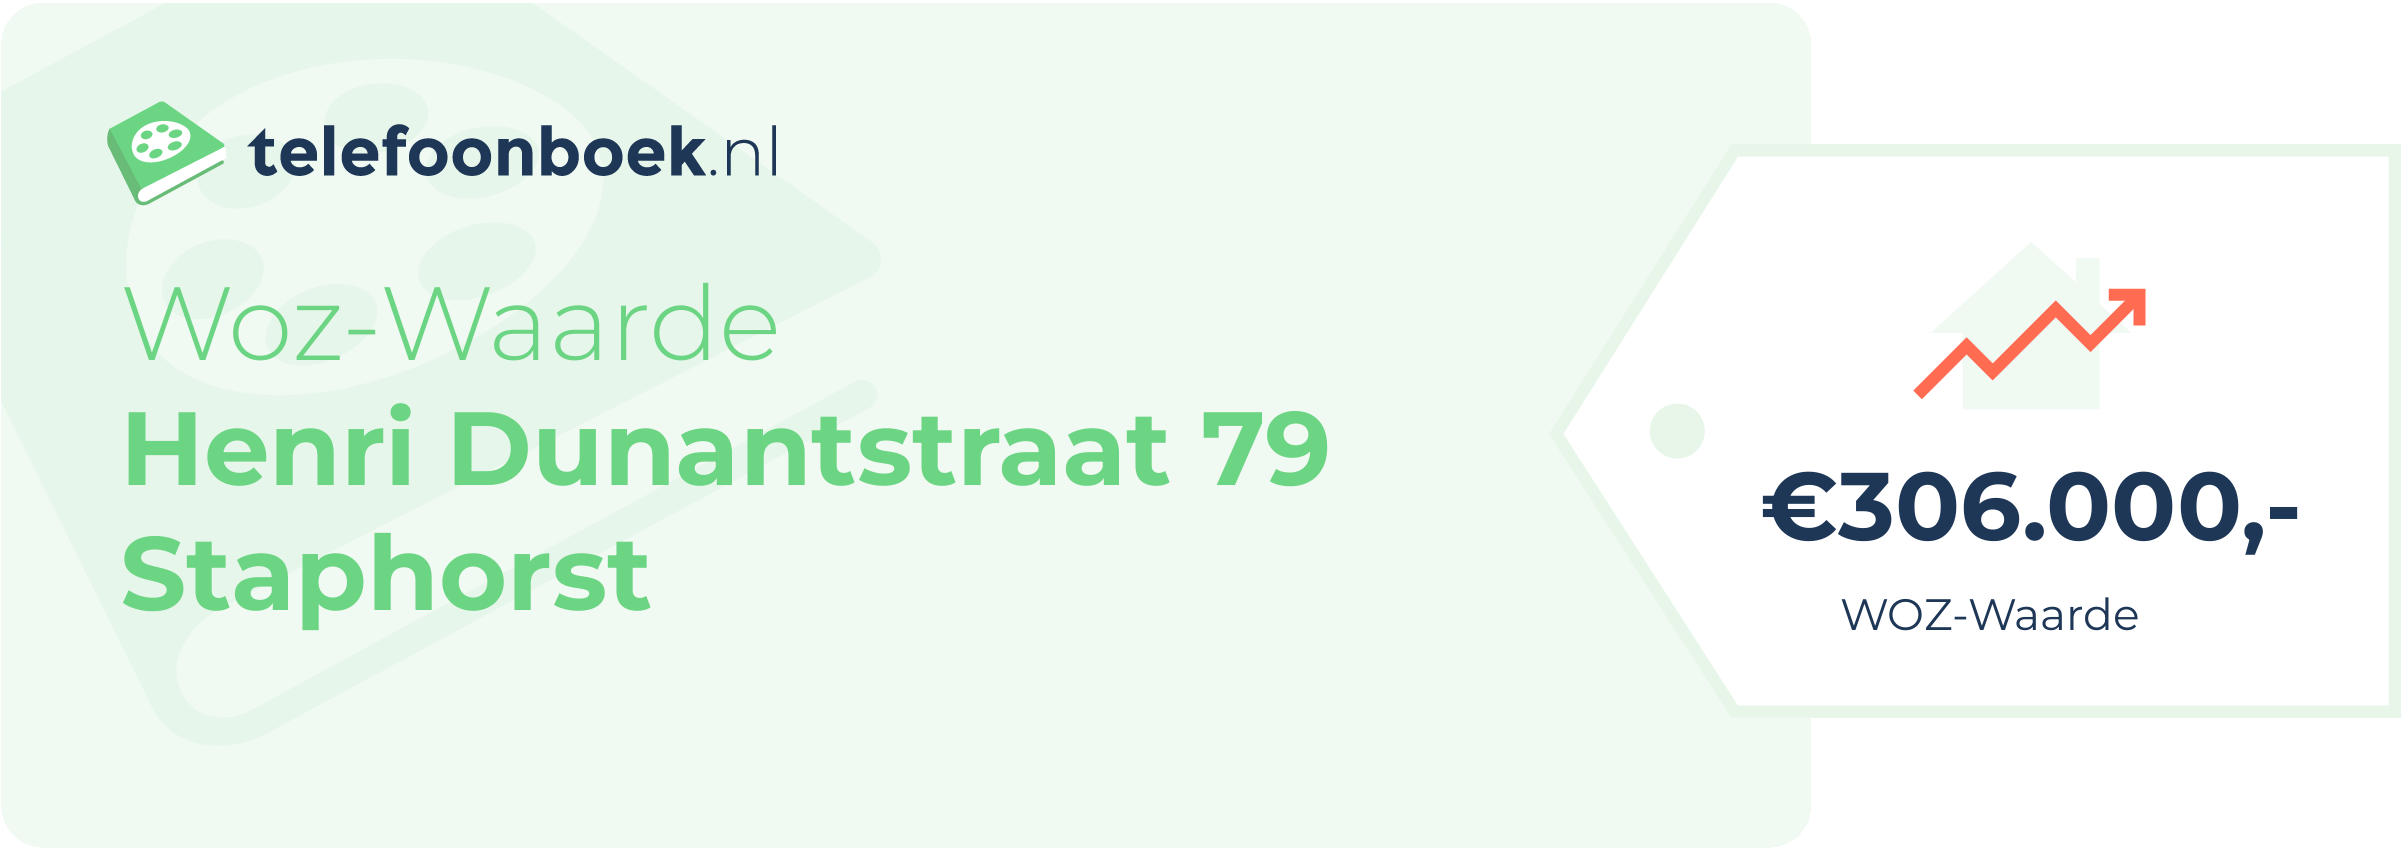 WOZ-waarde Henri Dunantstraat 79 Staphorst